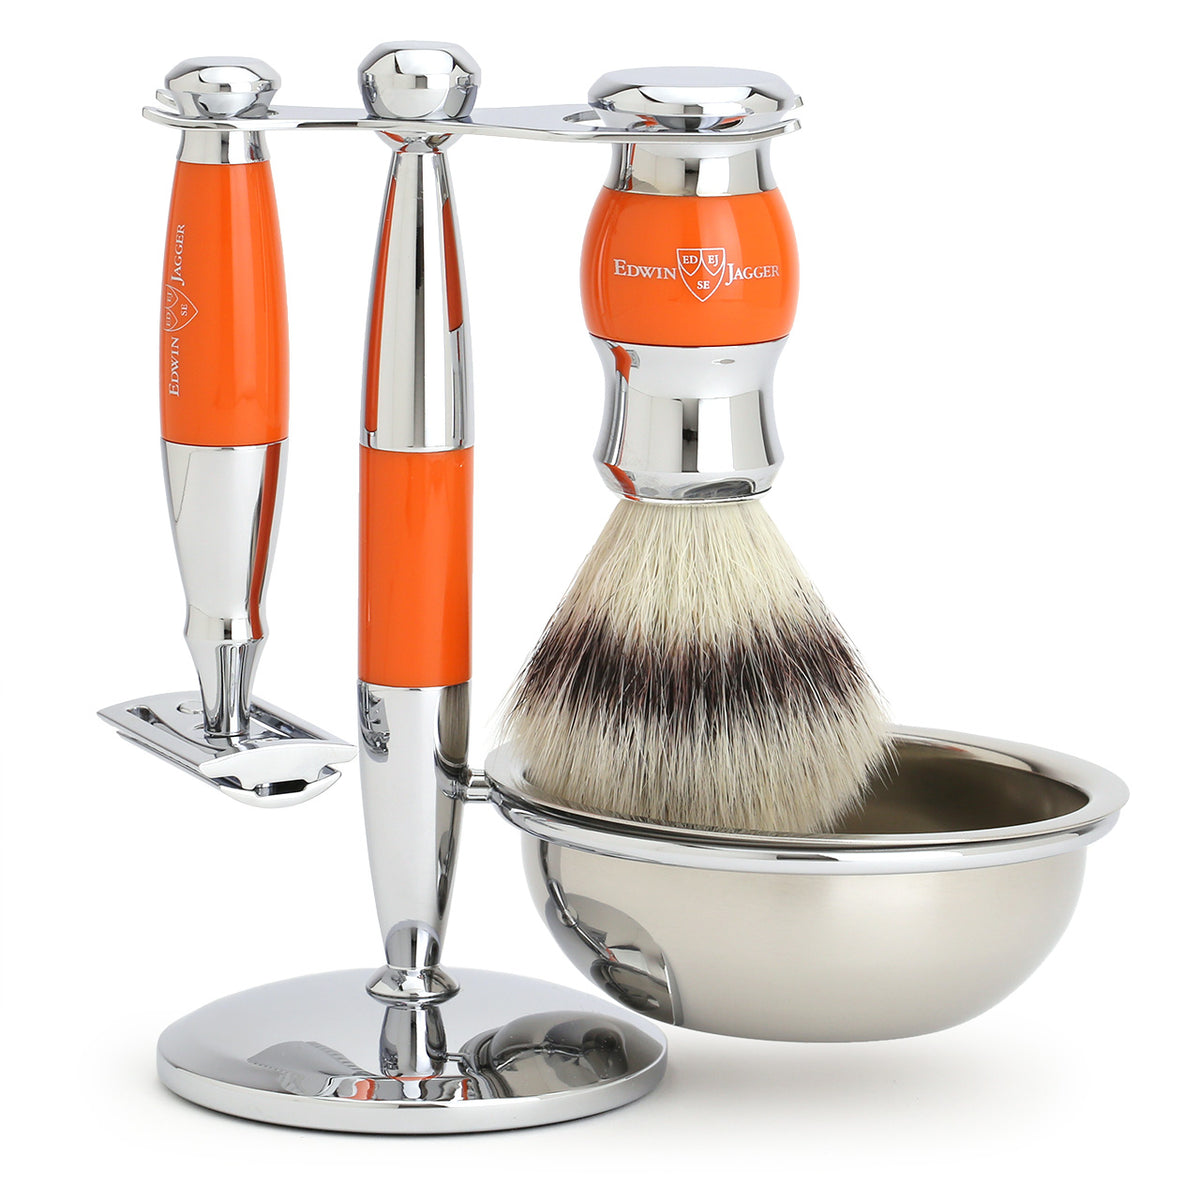 Edwin Jagger Shaving Set with Shaving Brush, Safety Razor, Stand and Bowl - Orange